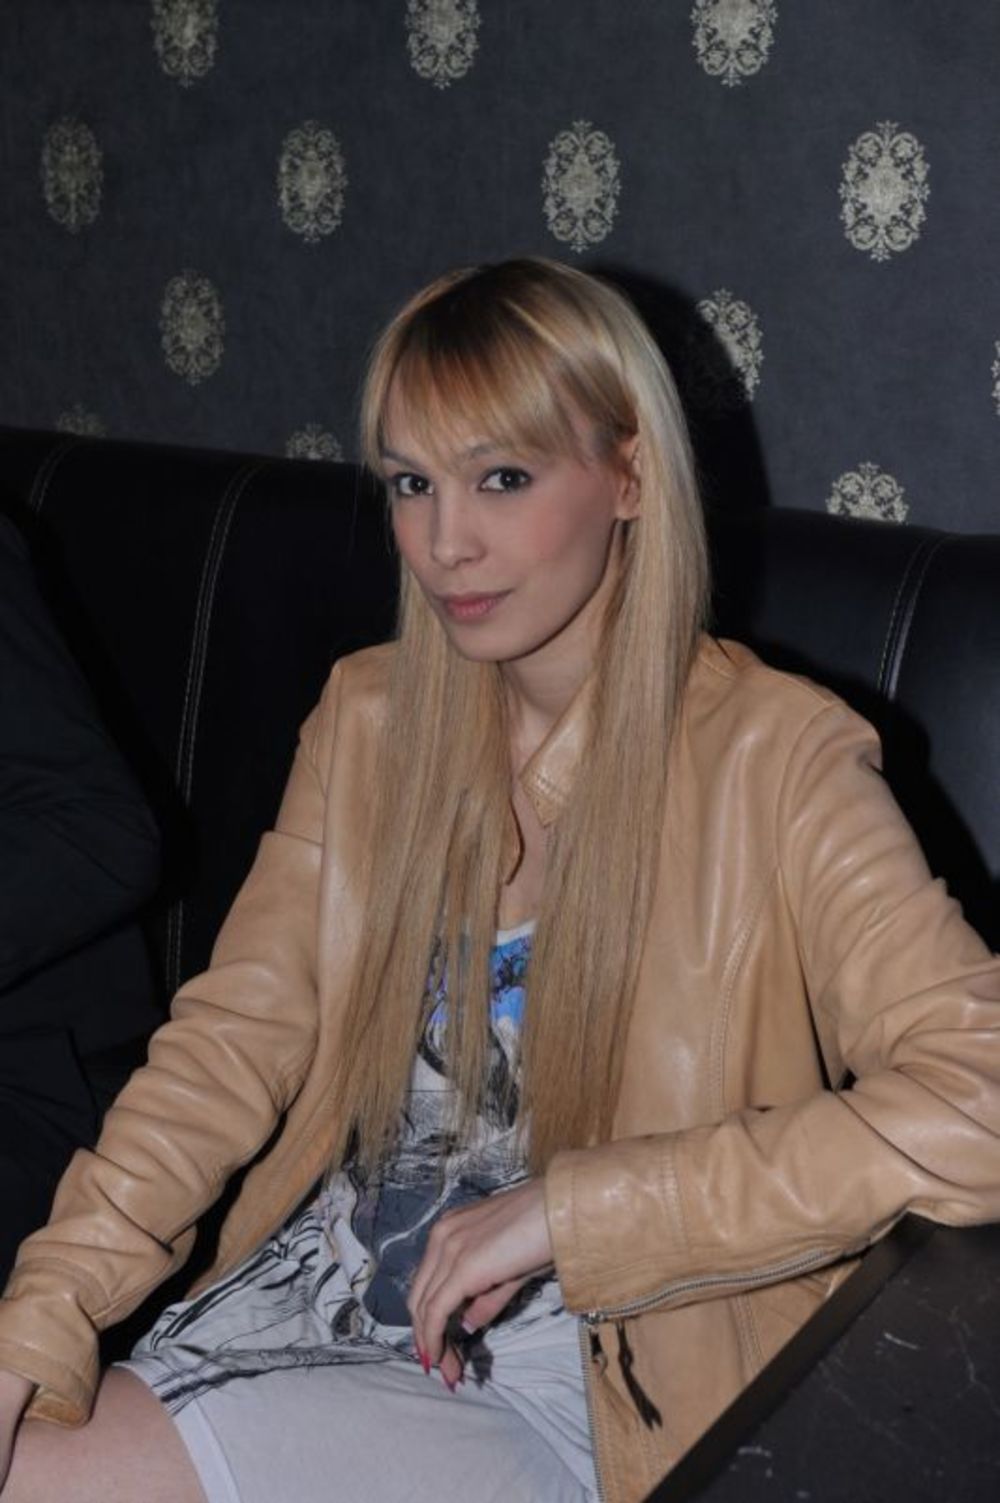 Brojne poznate ličnosti su i ovog ponedeljka u okviru humanitarne VIP večeri posetile poznati beogradski klub na devetom spratu, kako bi pomogle u prikupljanju humanitarnih priloga za najugroženije. Crnogorska pop pevačica Milena Vučić pored brojnih obaveza ok